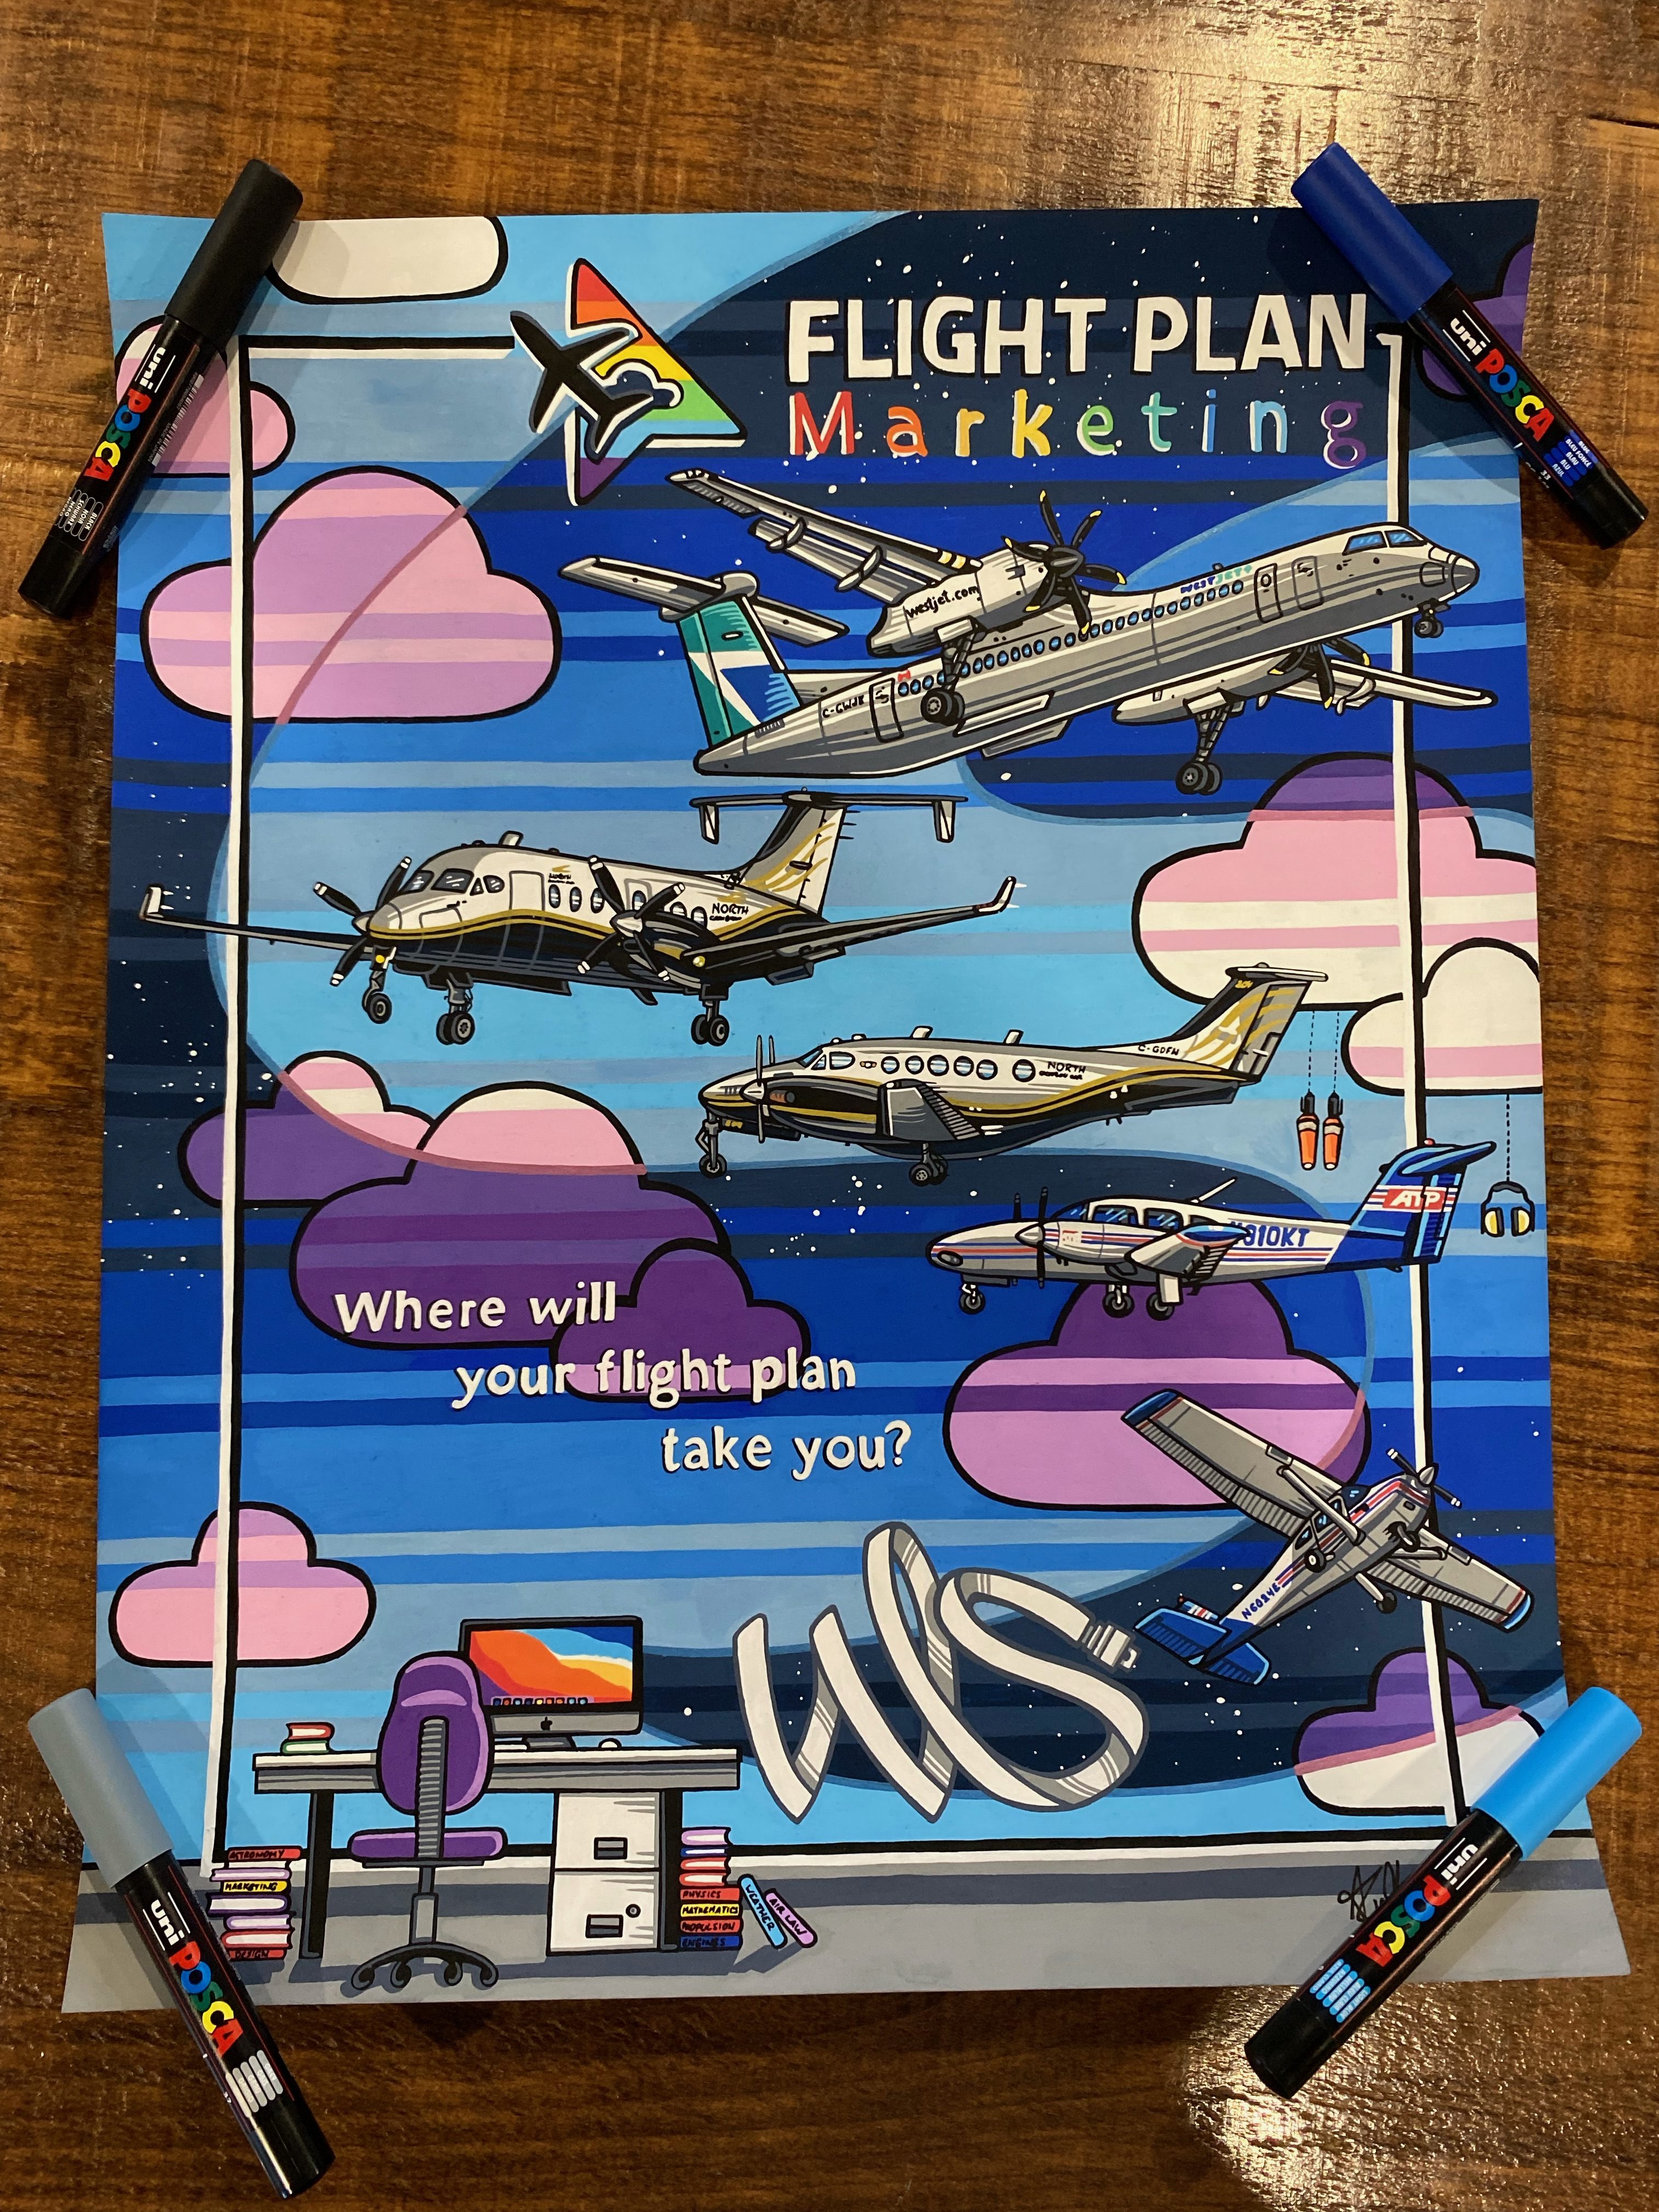 visual history of flight plan marketing